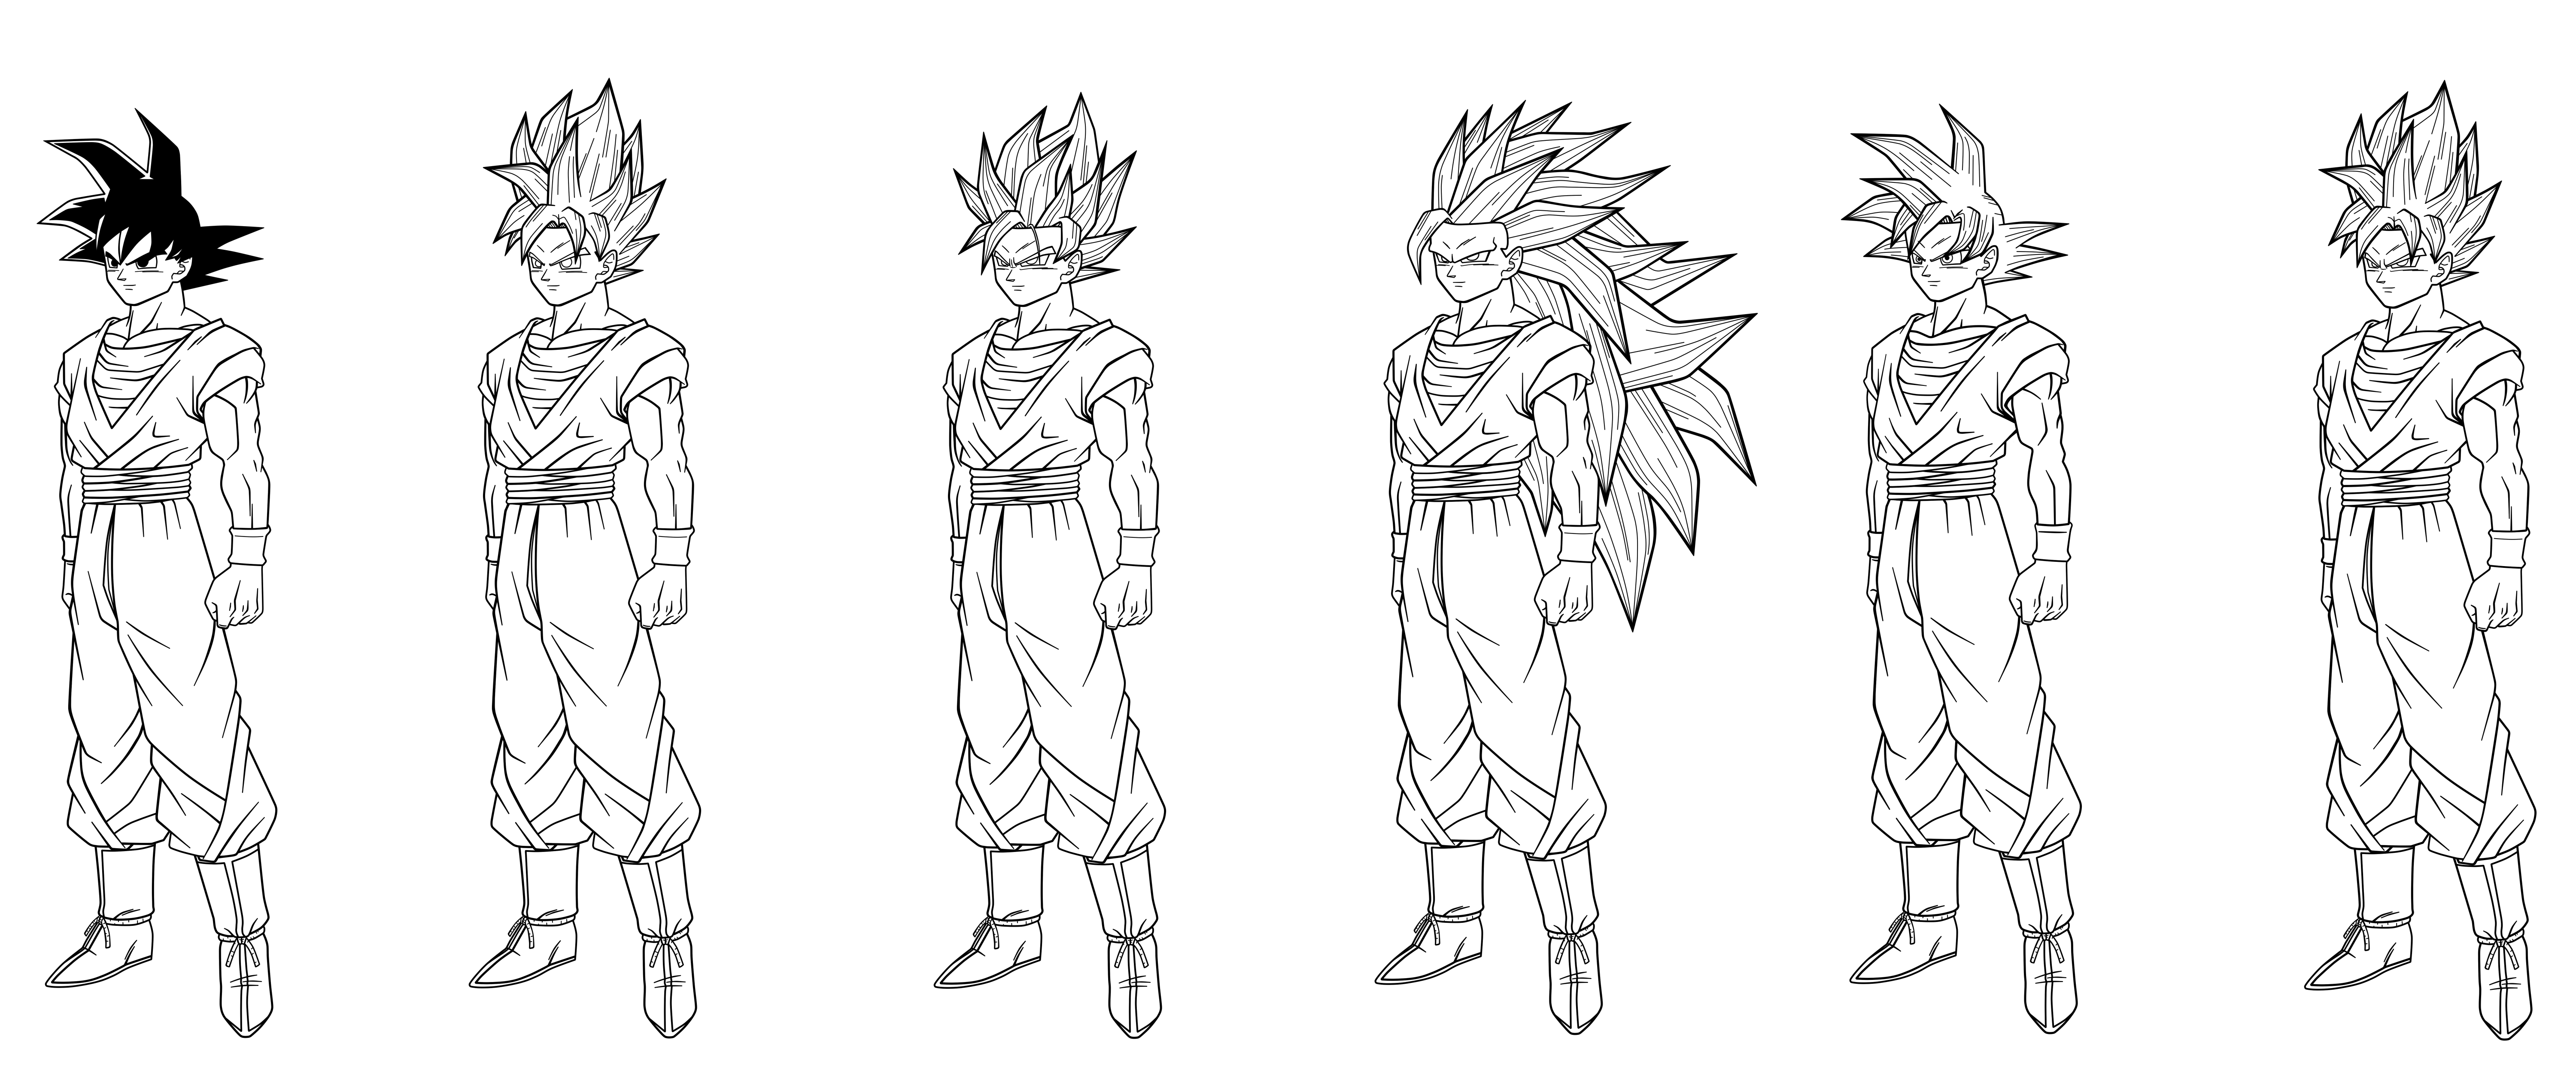 Transformaciones Goku by MaiagulCuon on DeviantArt